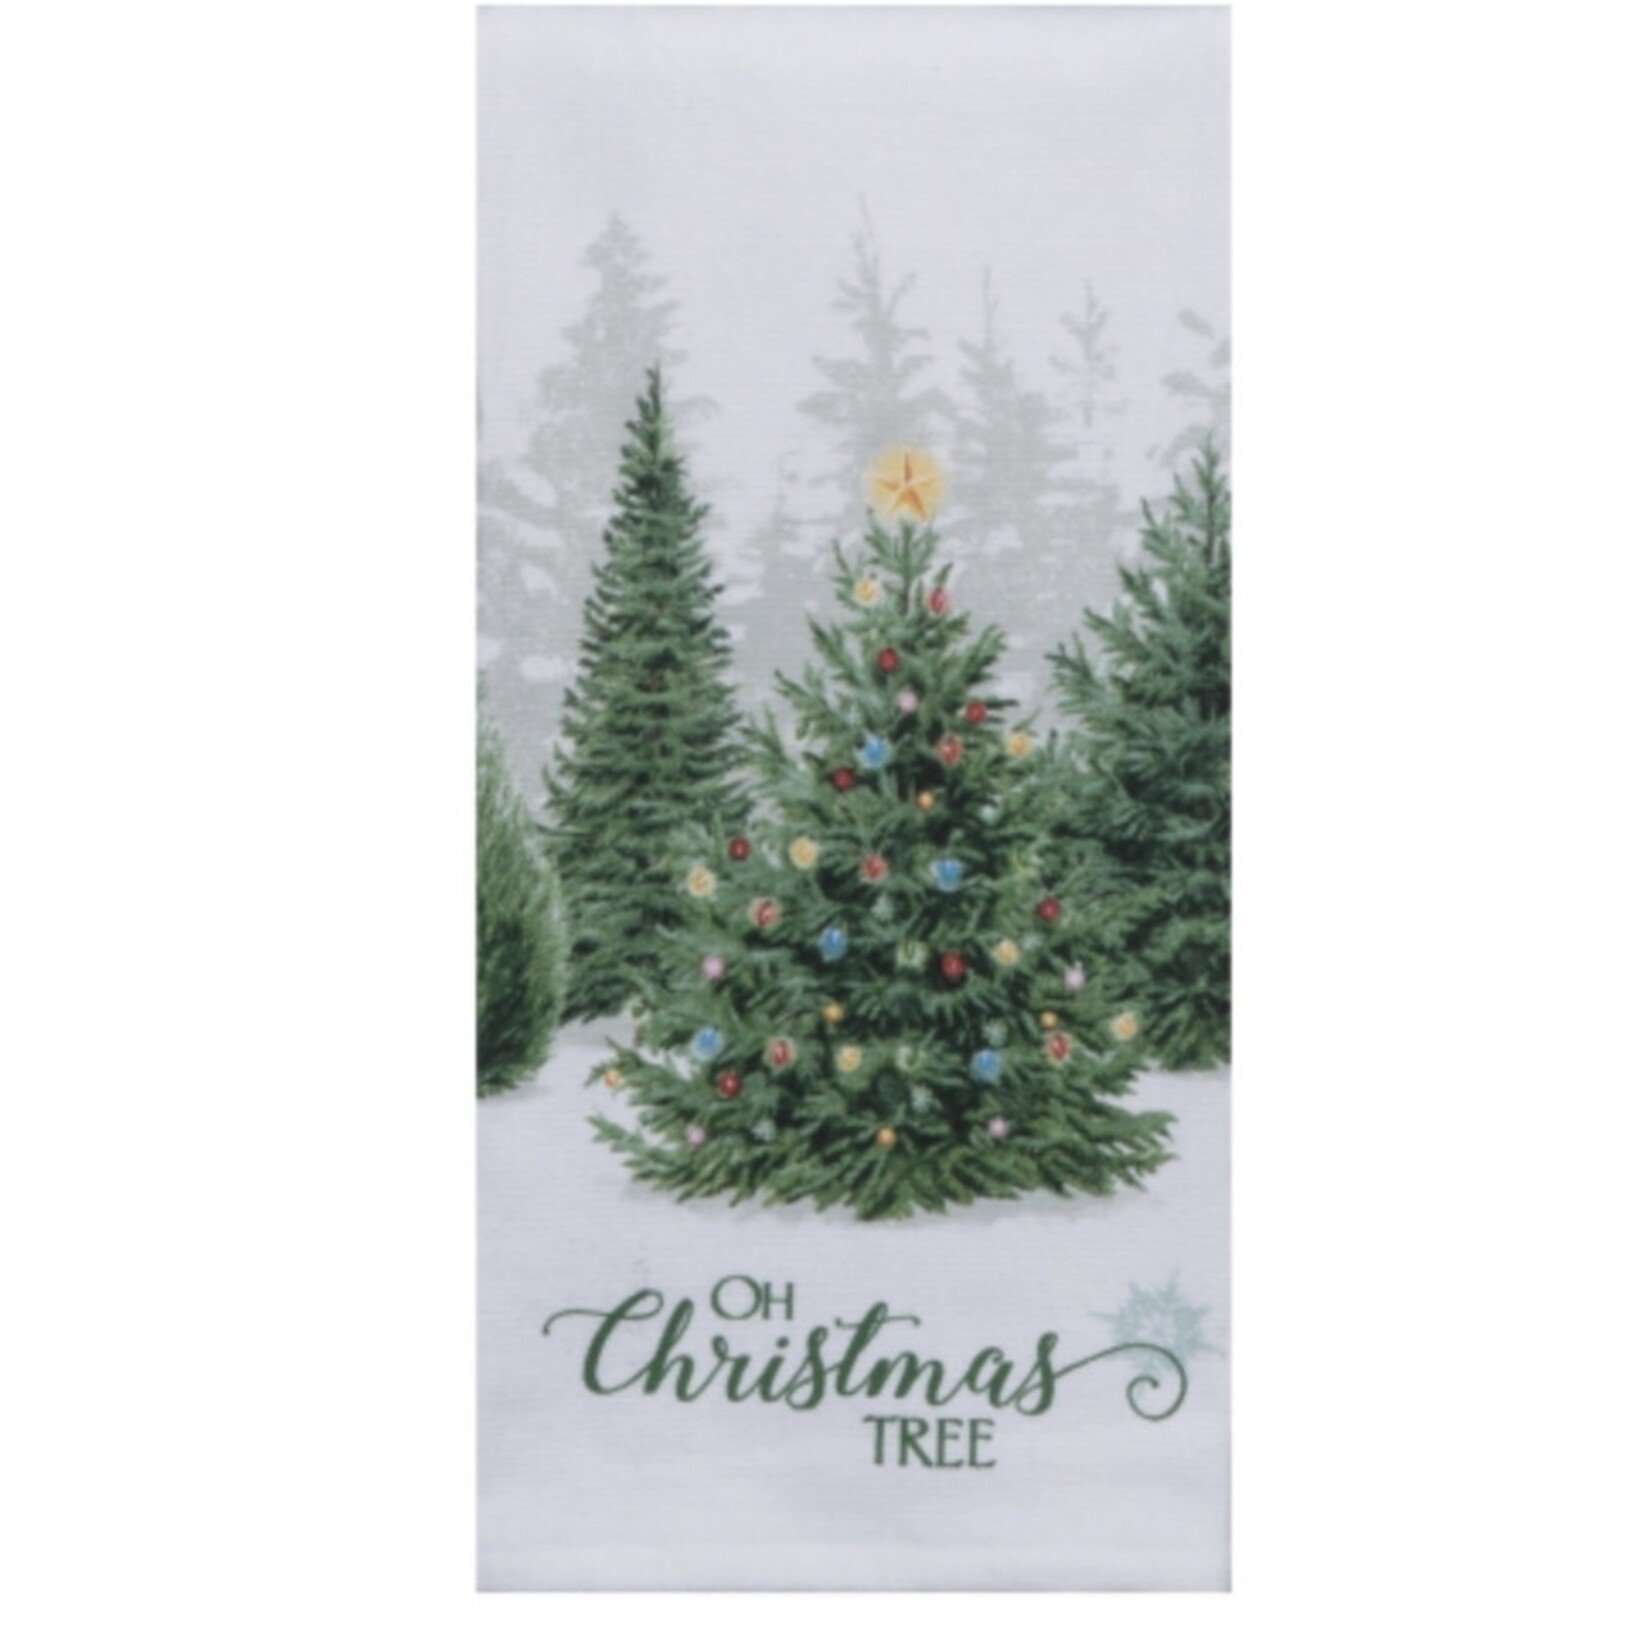 KAYDEE DESIGNS KAYDEE DESIGNS Oh Christmas Tree Tea Towel